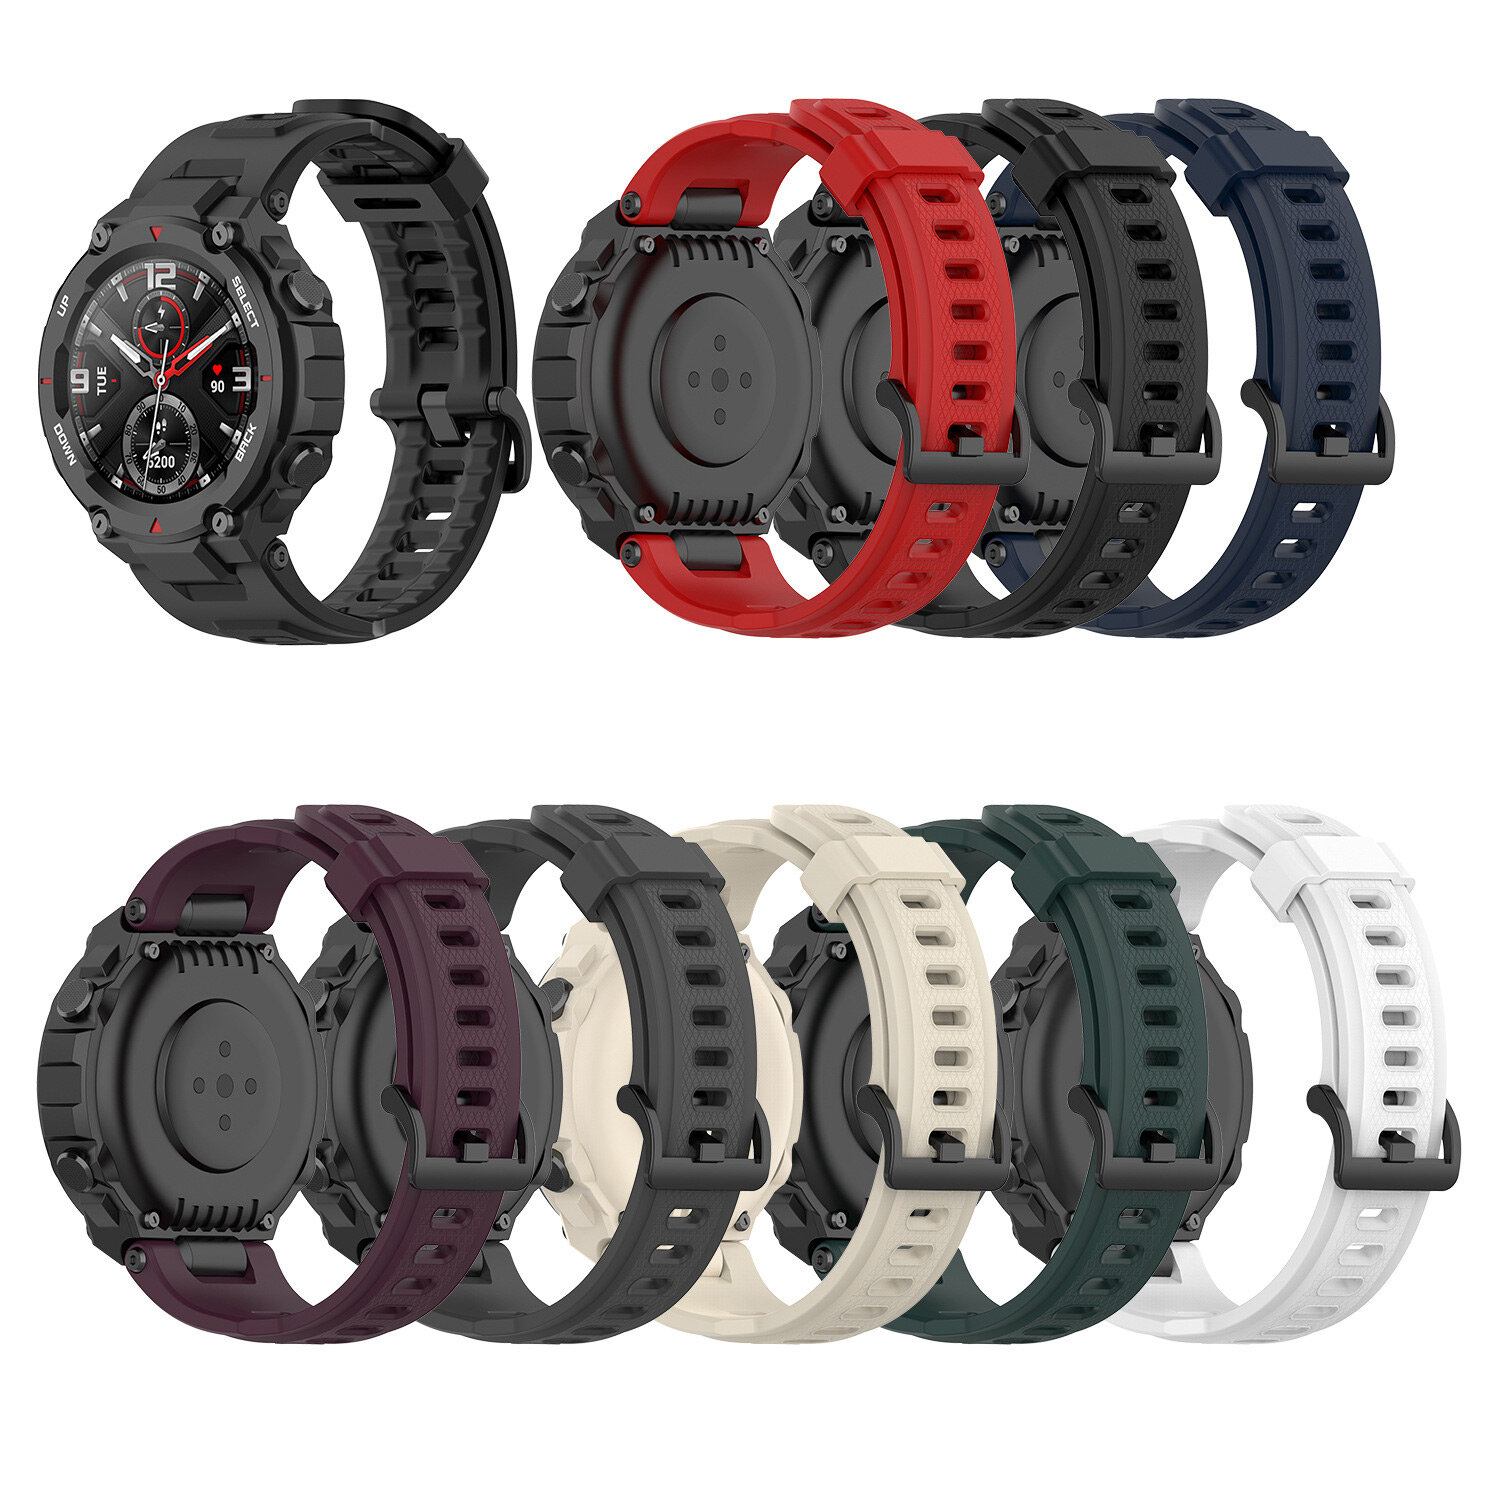 22mm Soft Siliconen horlogeband Horlogeband vervangen voor Amazfit T-Rex / Ares